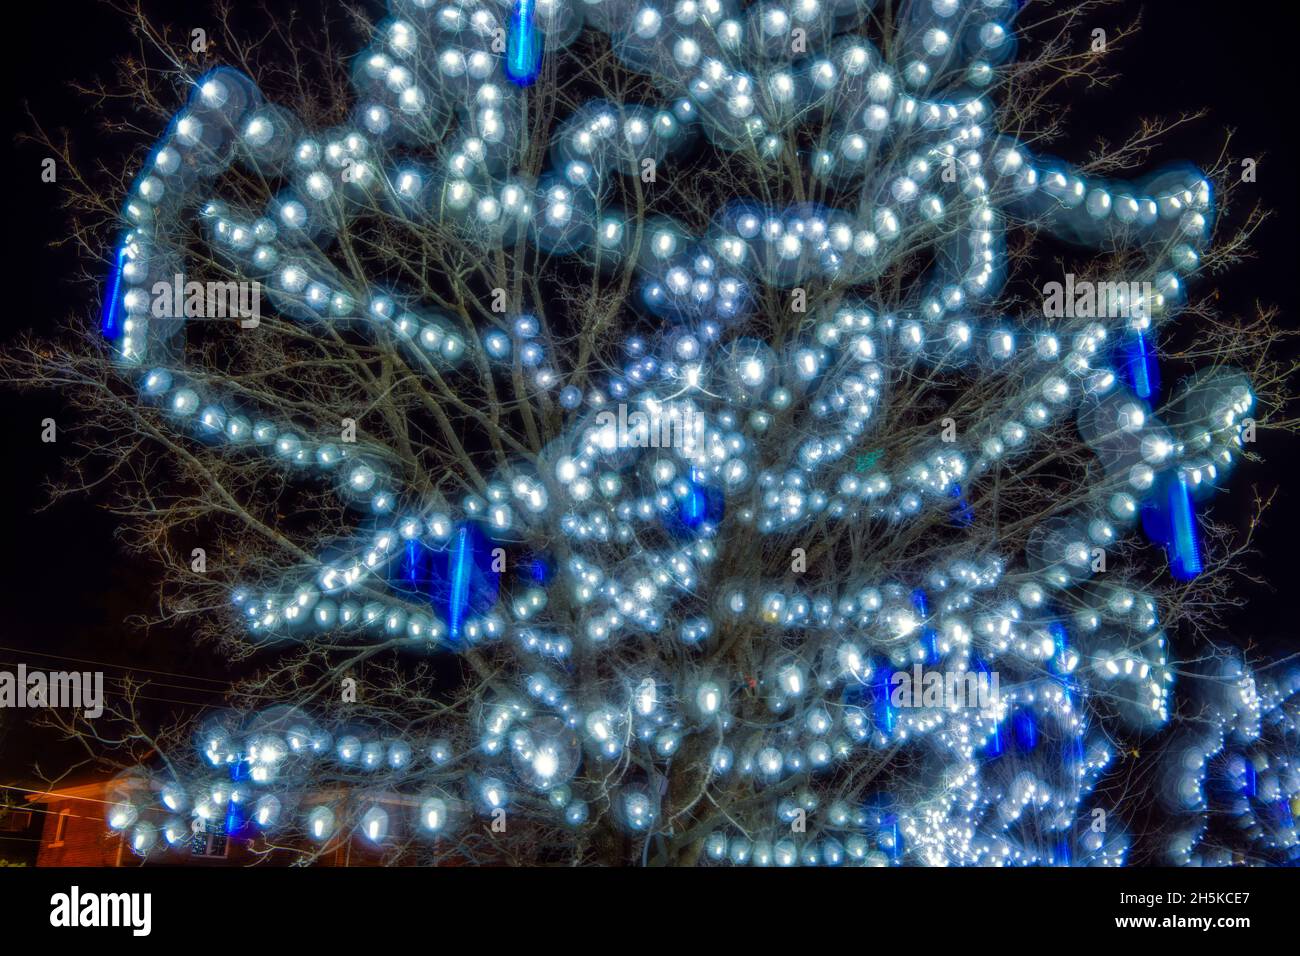 Festive lights in Bracebridge Park, Bracebridge, Ontario, Canada Stock Photo